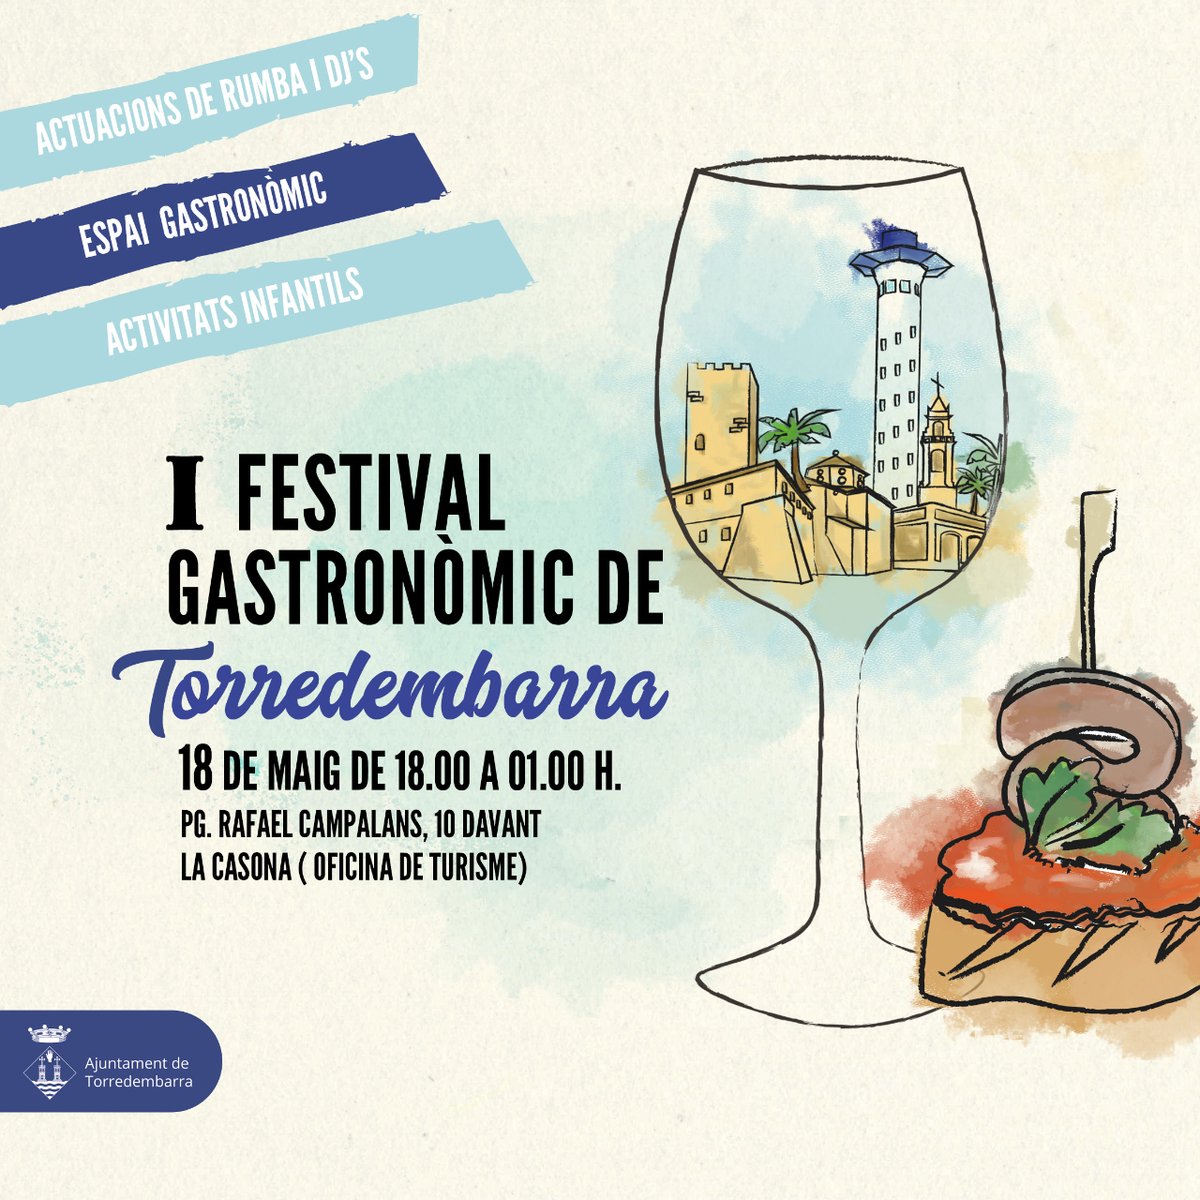 🍴 #Bondia| Avui ➡ Primer Festival Gastronòmic de #Torredembarra 👉🏼 degustació de tapes amb la participació de 17 establiments, música i activitats infantils. 🕕📍 De 18 a 01 h, al pg. Rafael Campalans. Llegiu la notícia al web 🔗 shar.es/agsTYH